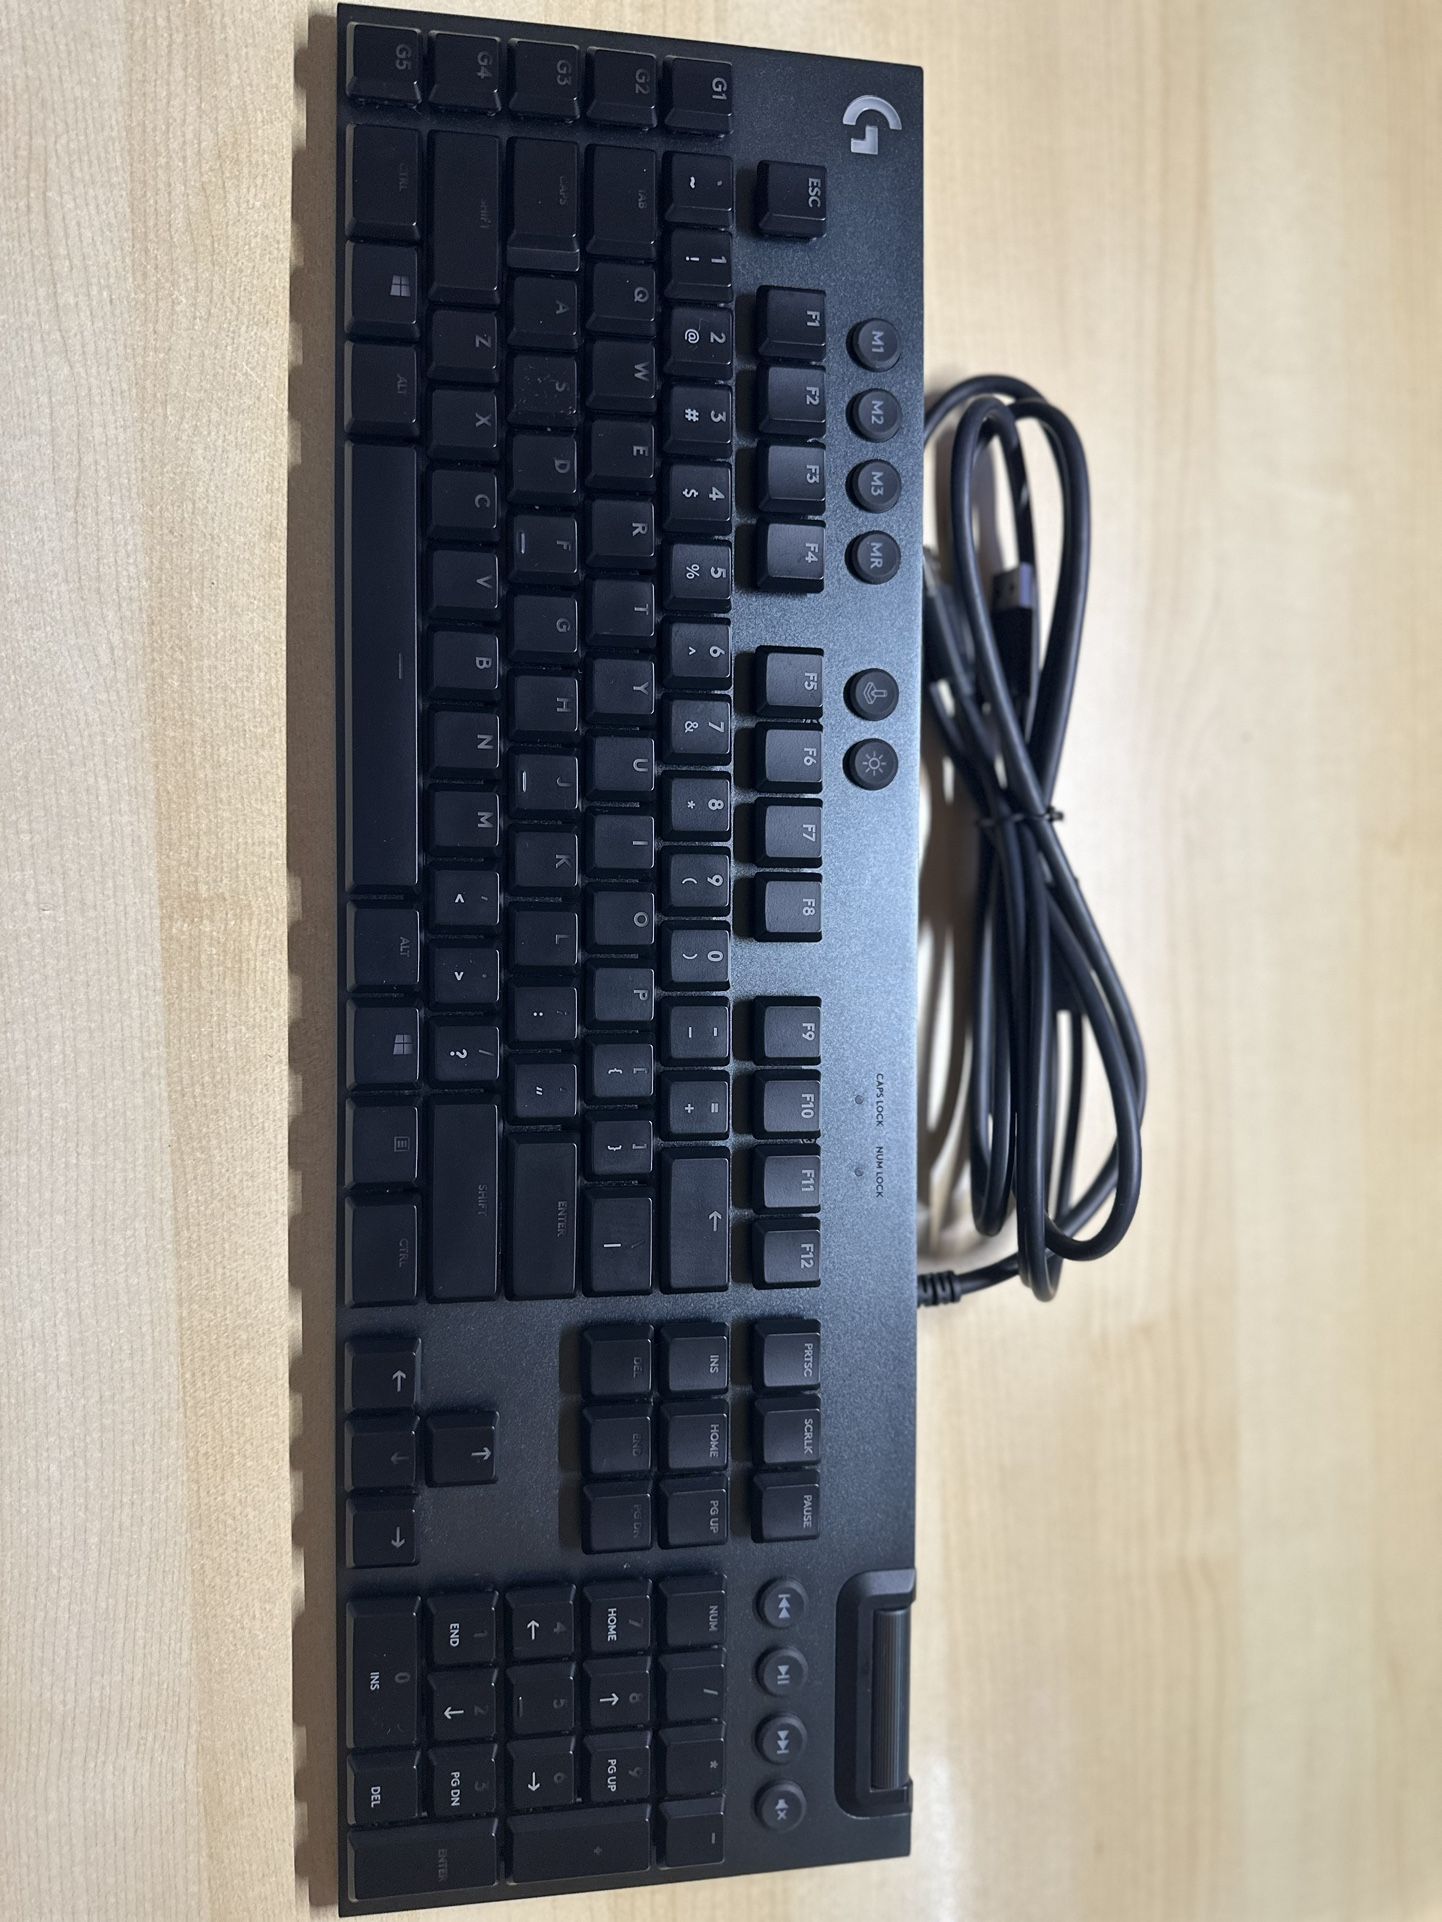 Logitech G815 Mechanical RGB Gaming Keyboard Tactile Switch